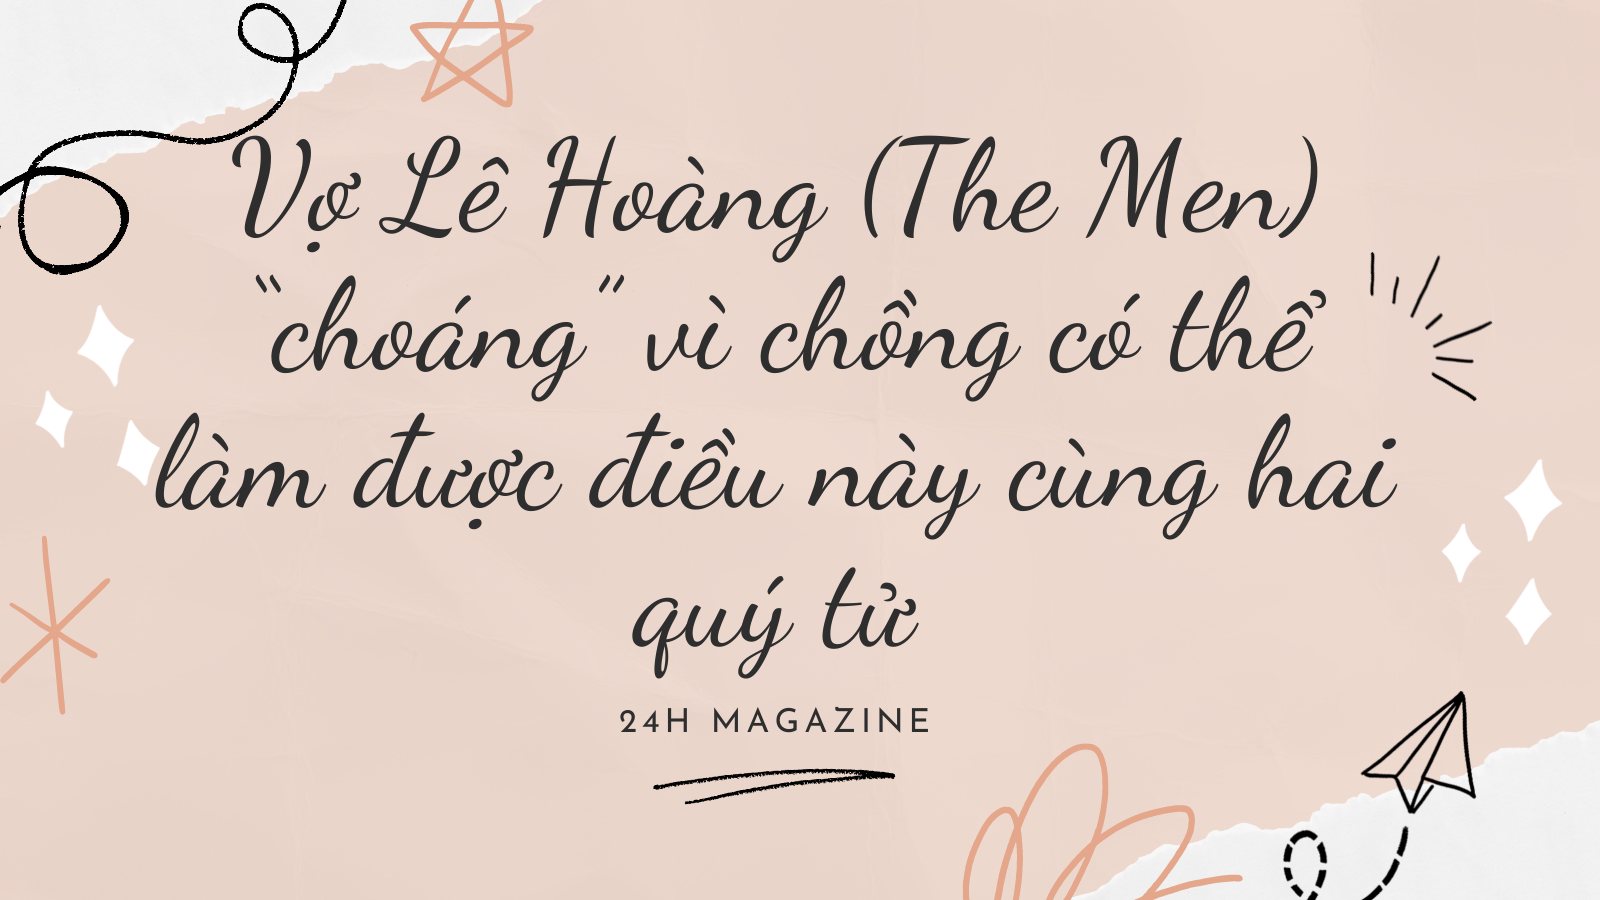 Vợ Lê Hoàng (The Men) &#34;choáng&#34; vì khả năng bất ngờ của chồng - 1